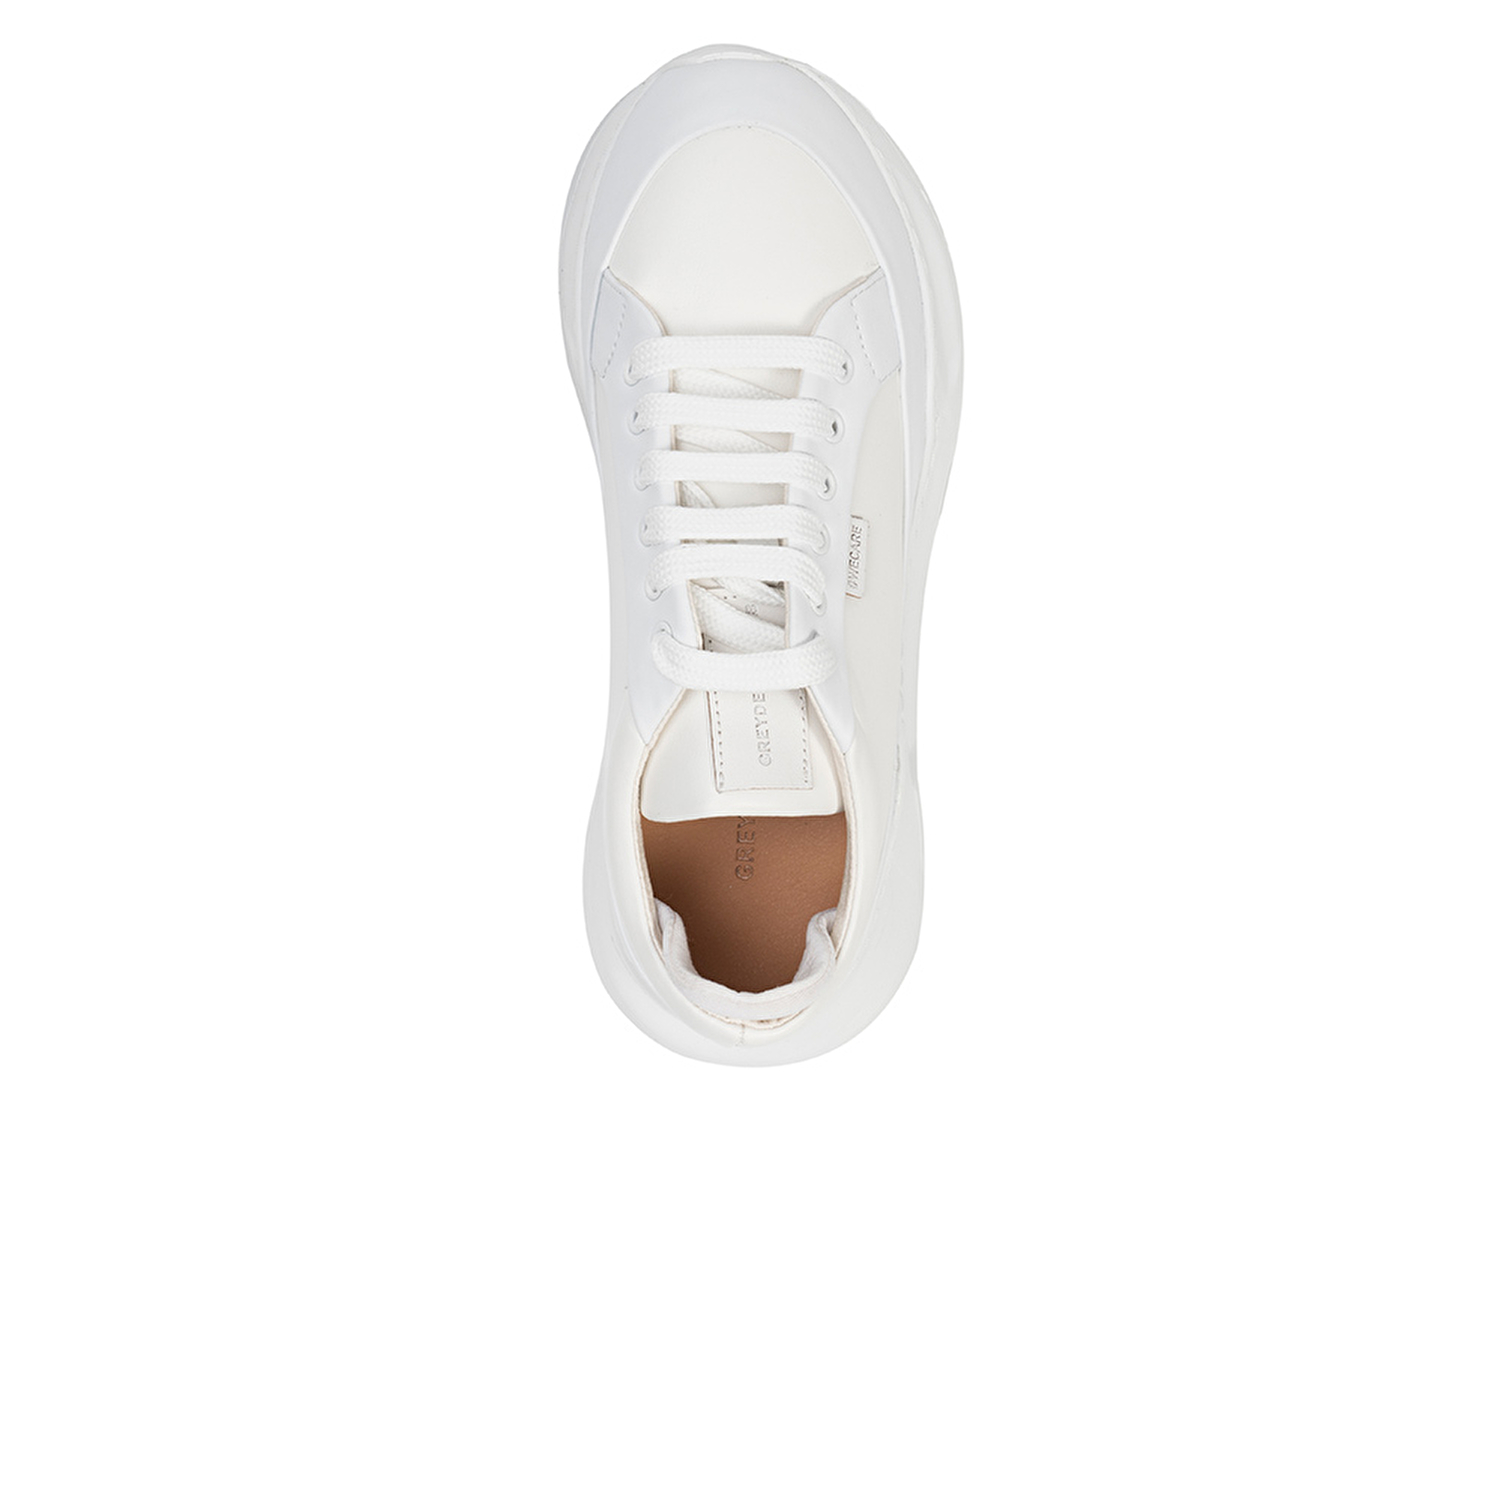 Kadın Beyaz Hakiki Deri Spor Ayakkabı 3Y2SA45001-3